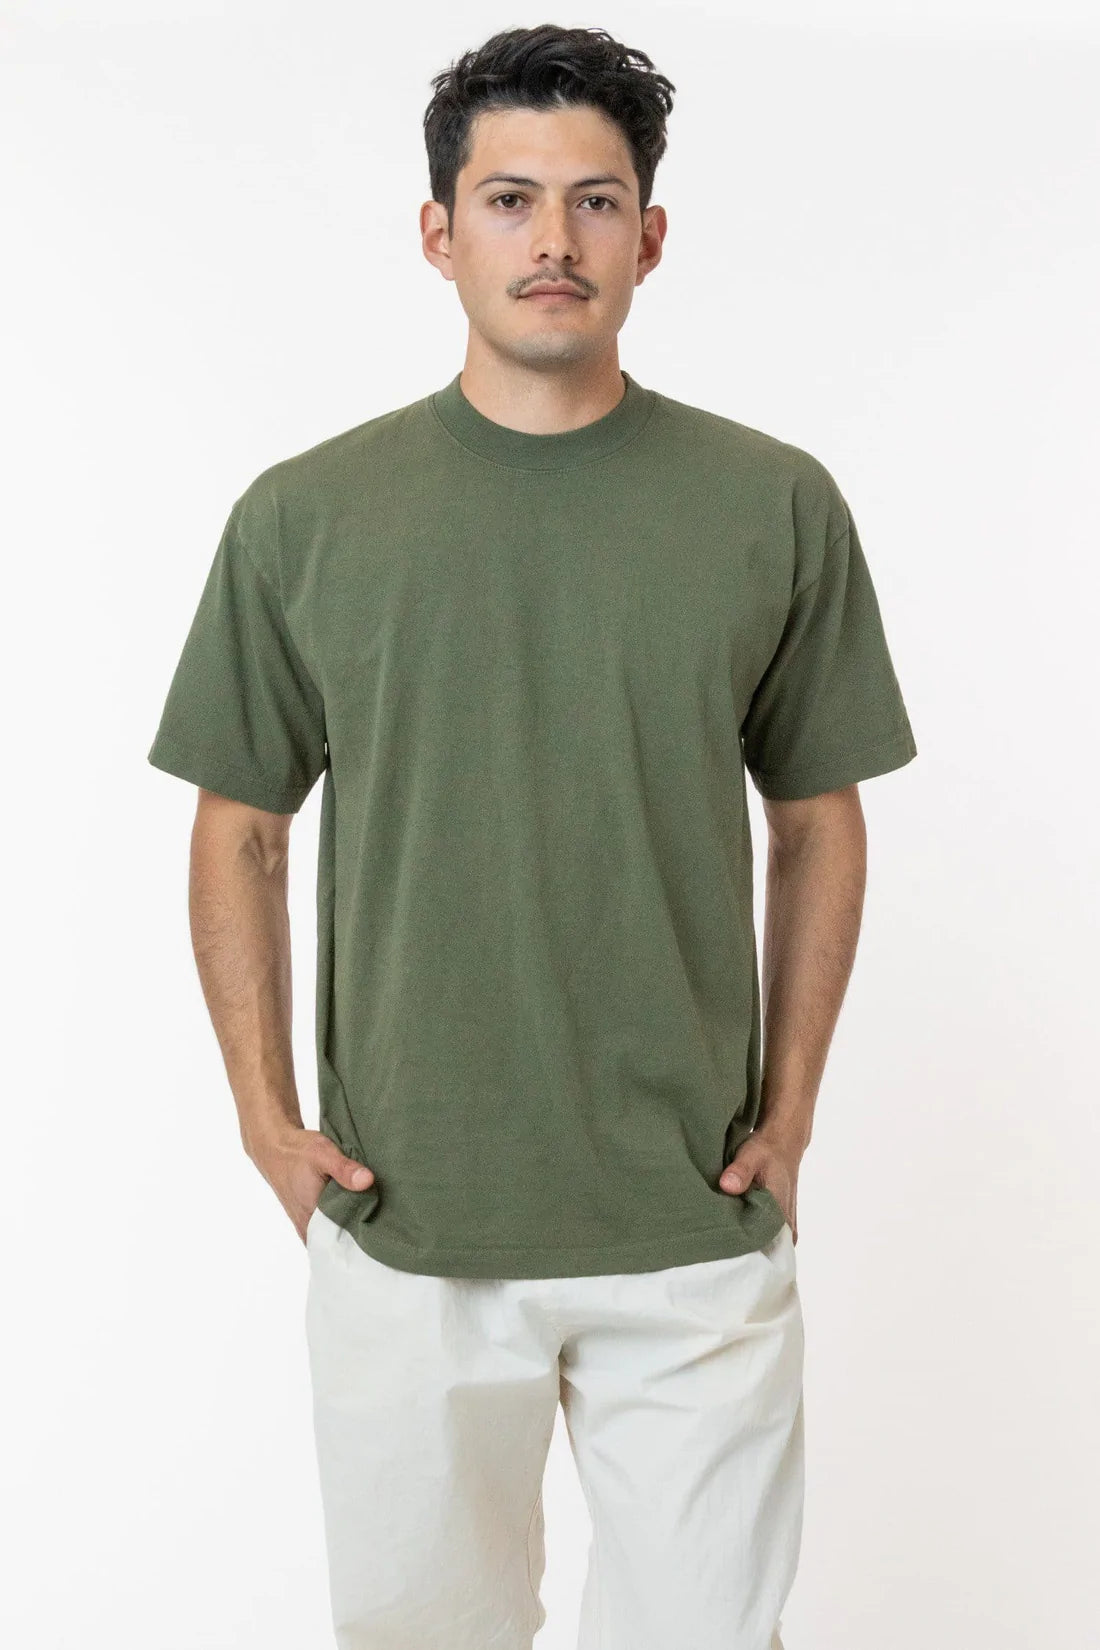 6.5 Oz. Garment Dye Crewneck T-Shirt | Regular Size | LA Apparel